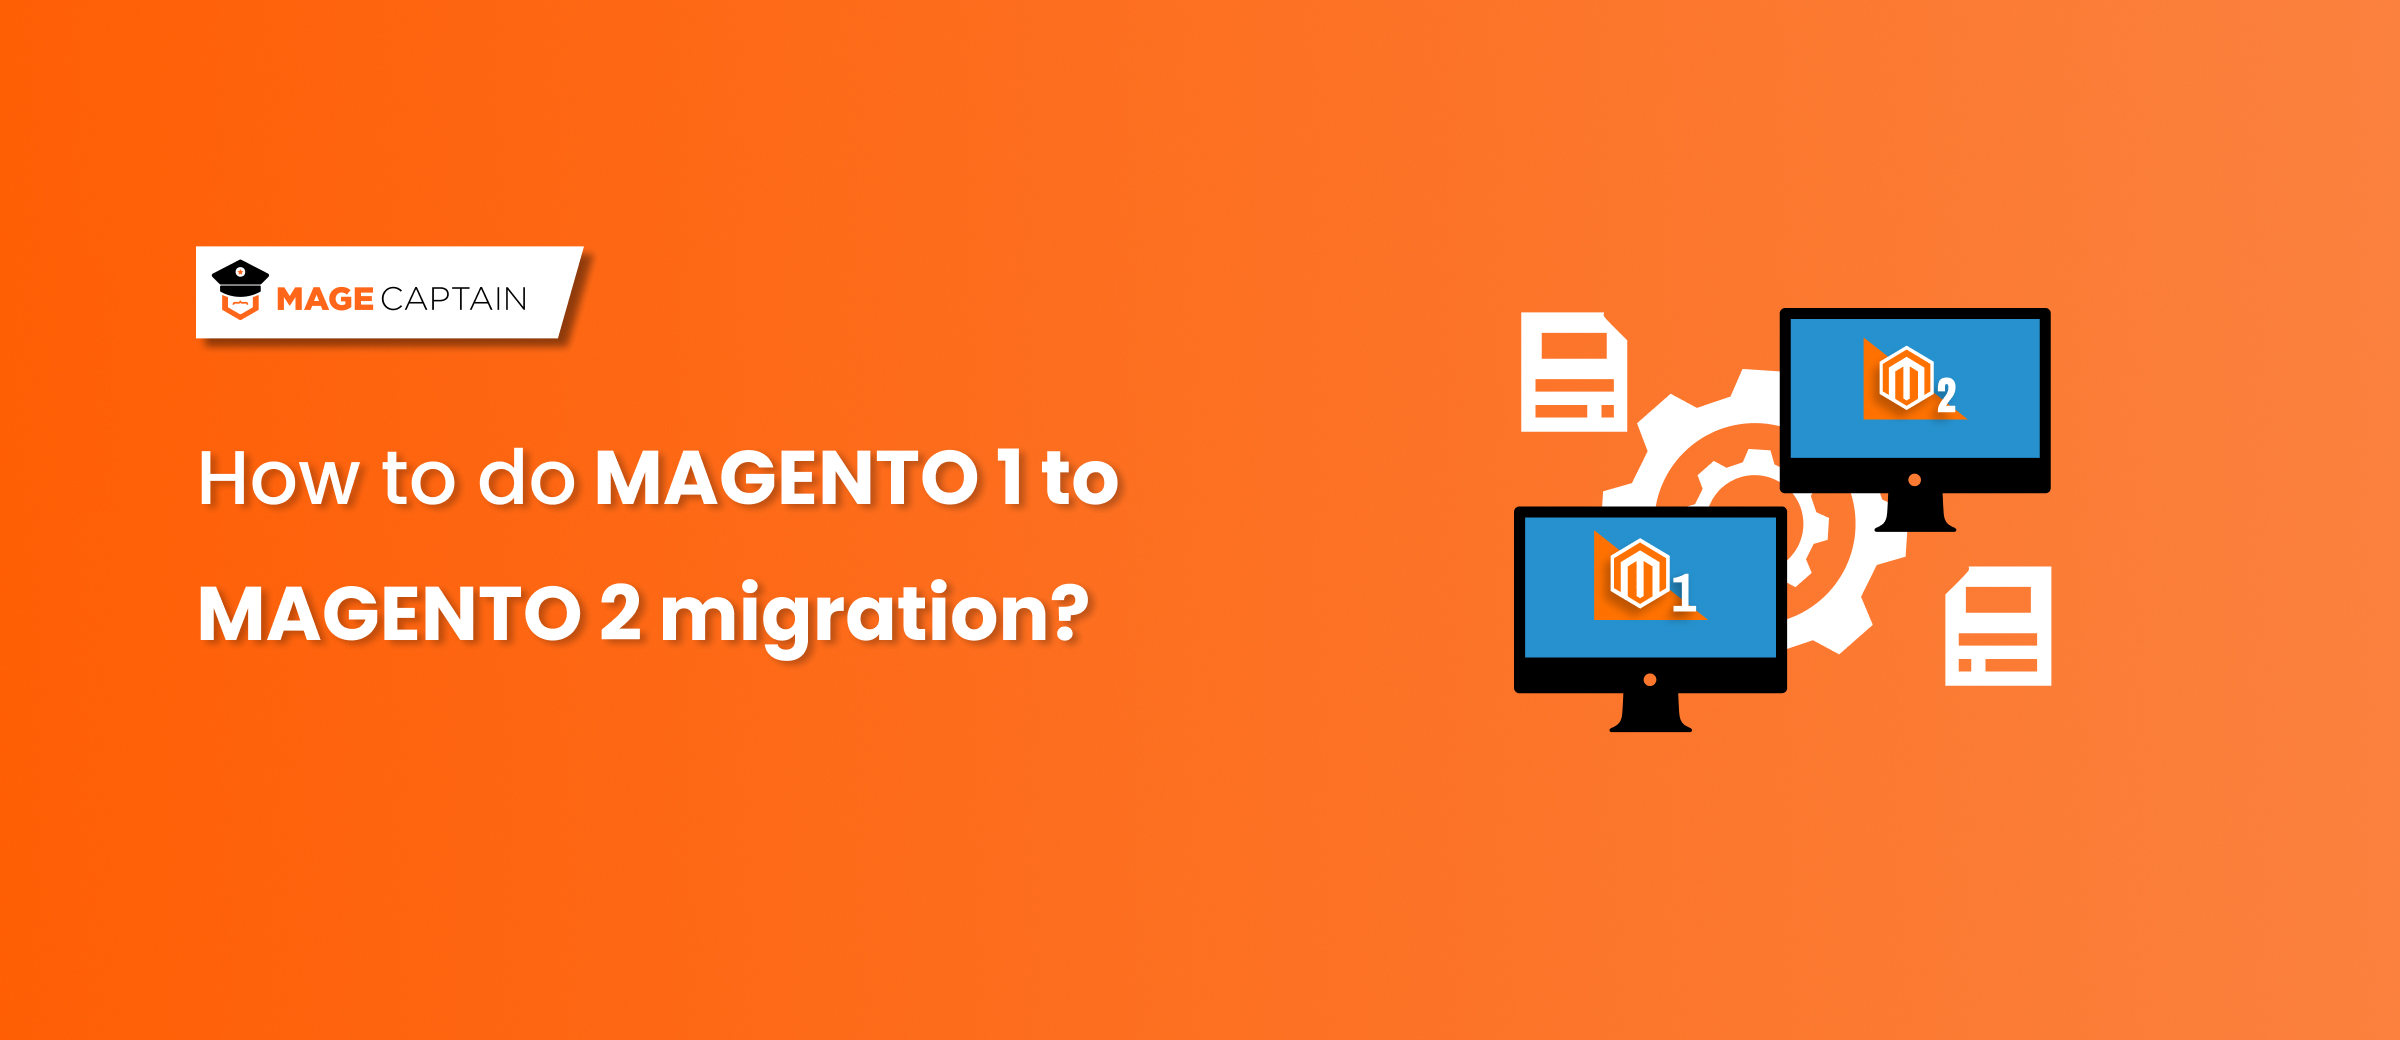 magento 1 to magento 2 migration